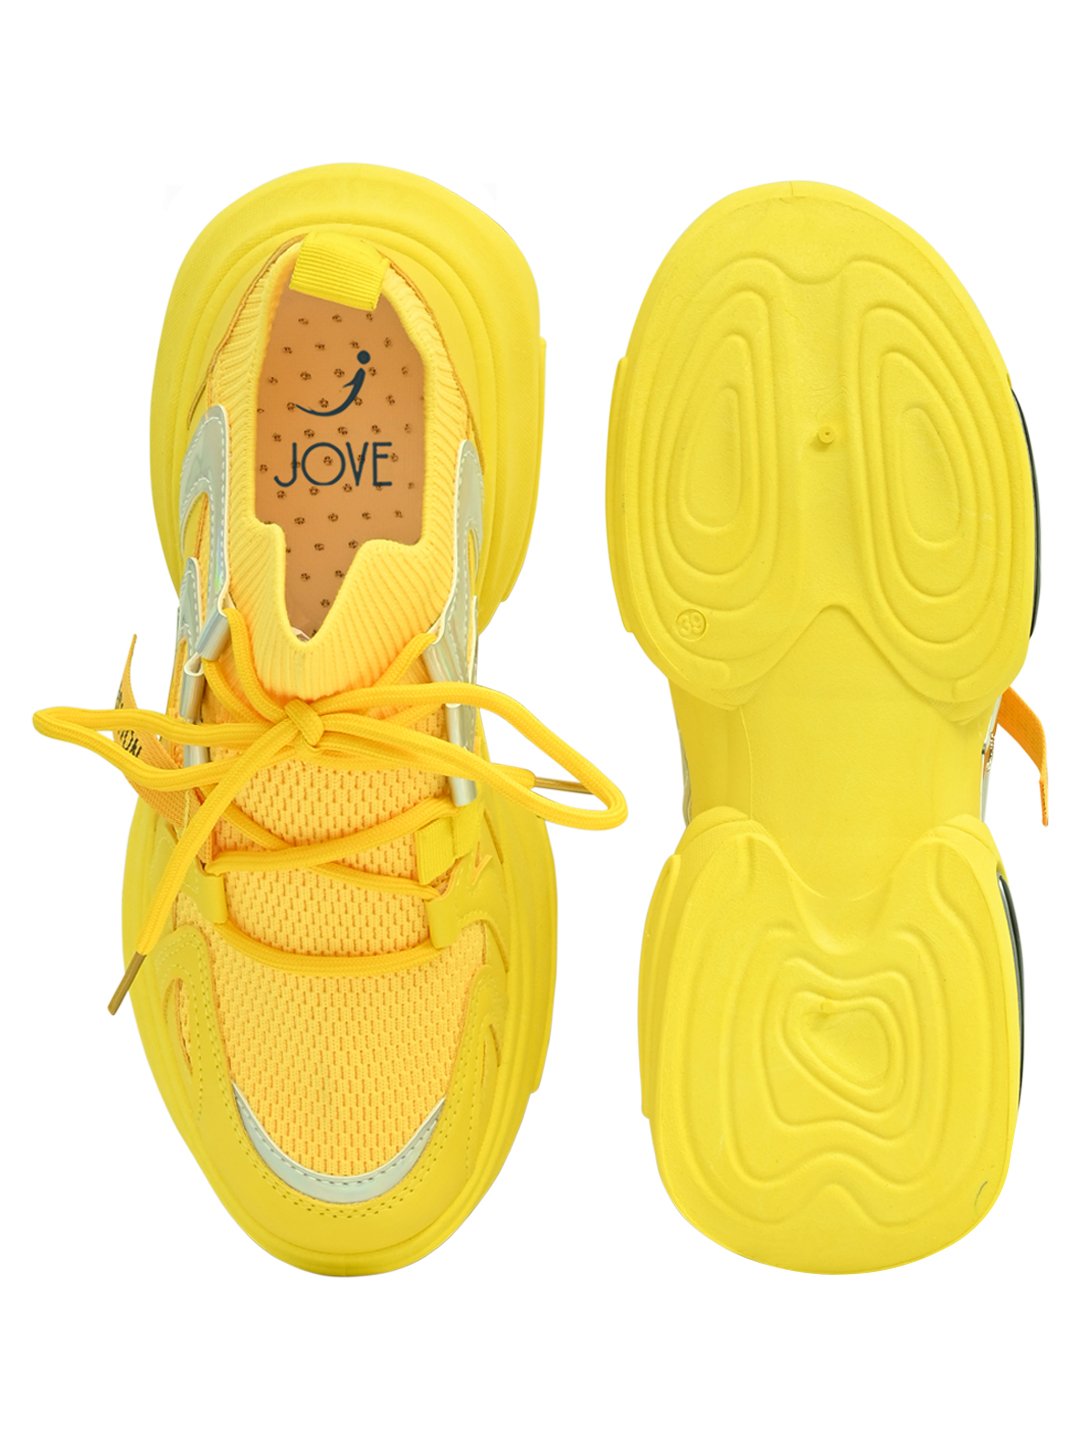 Footwear, Women Footwear, Yellow Sneakers